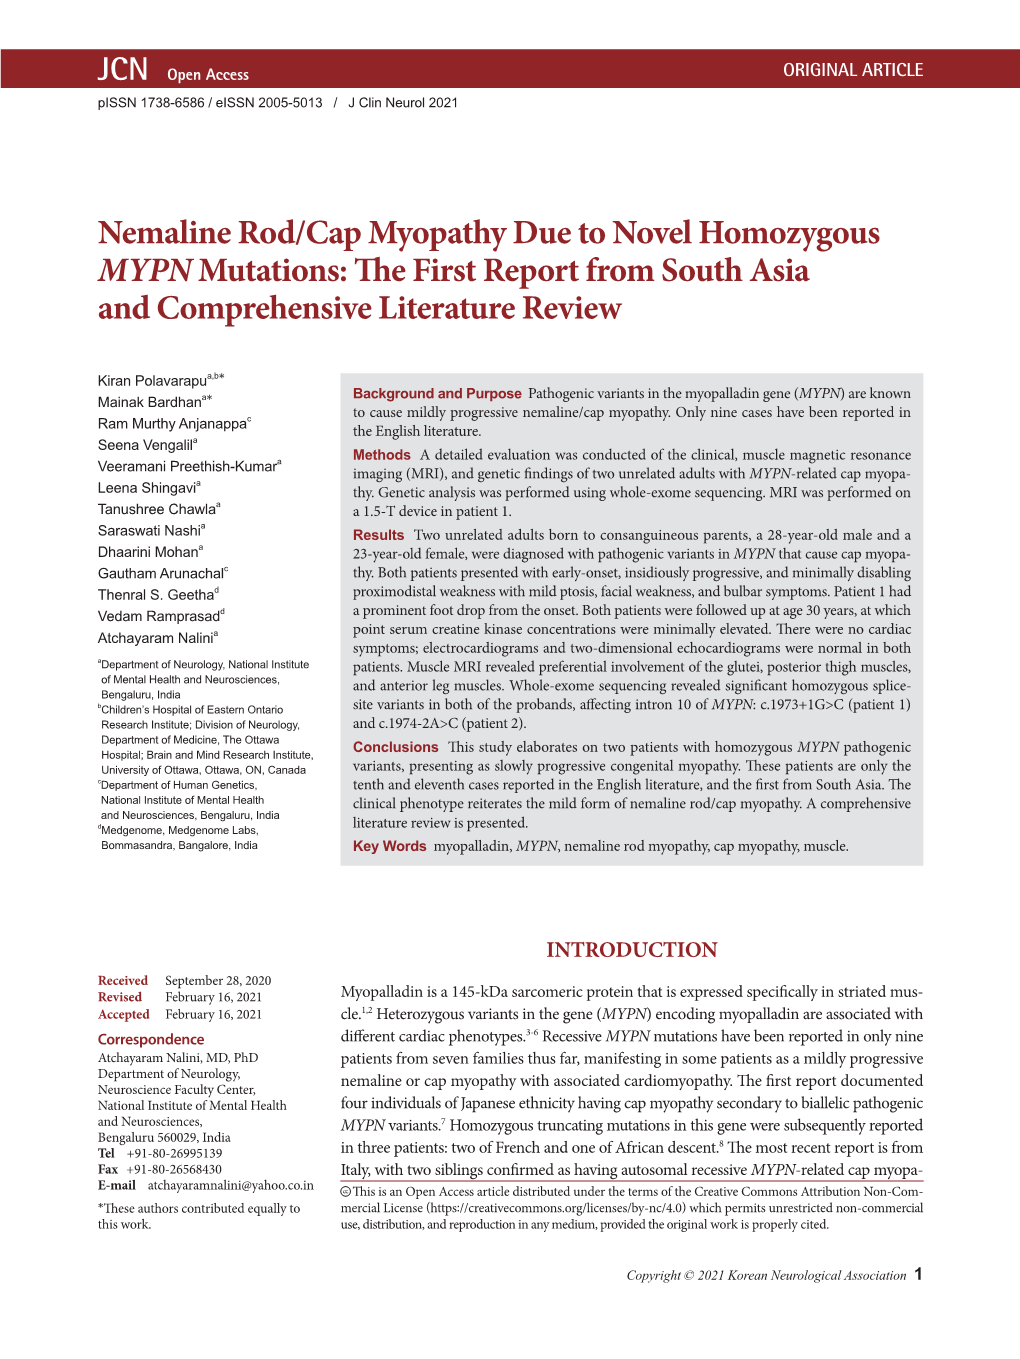 Nemaline Rod/Cap Myopathy Due to Novel Homozygous Mypnmutations